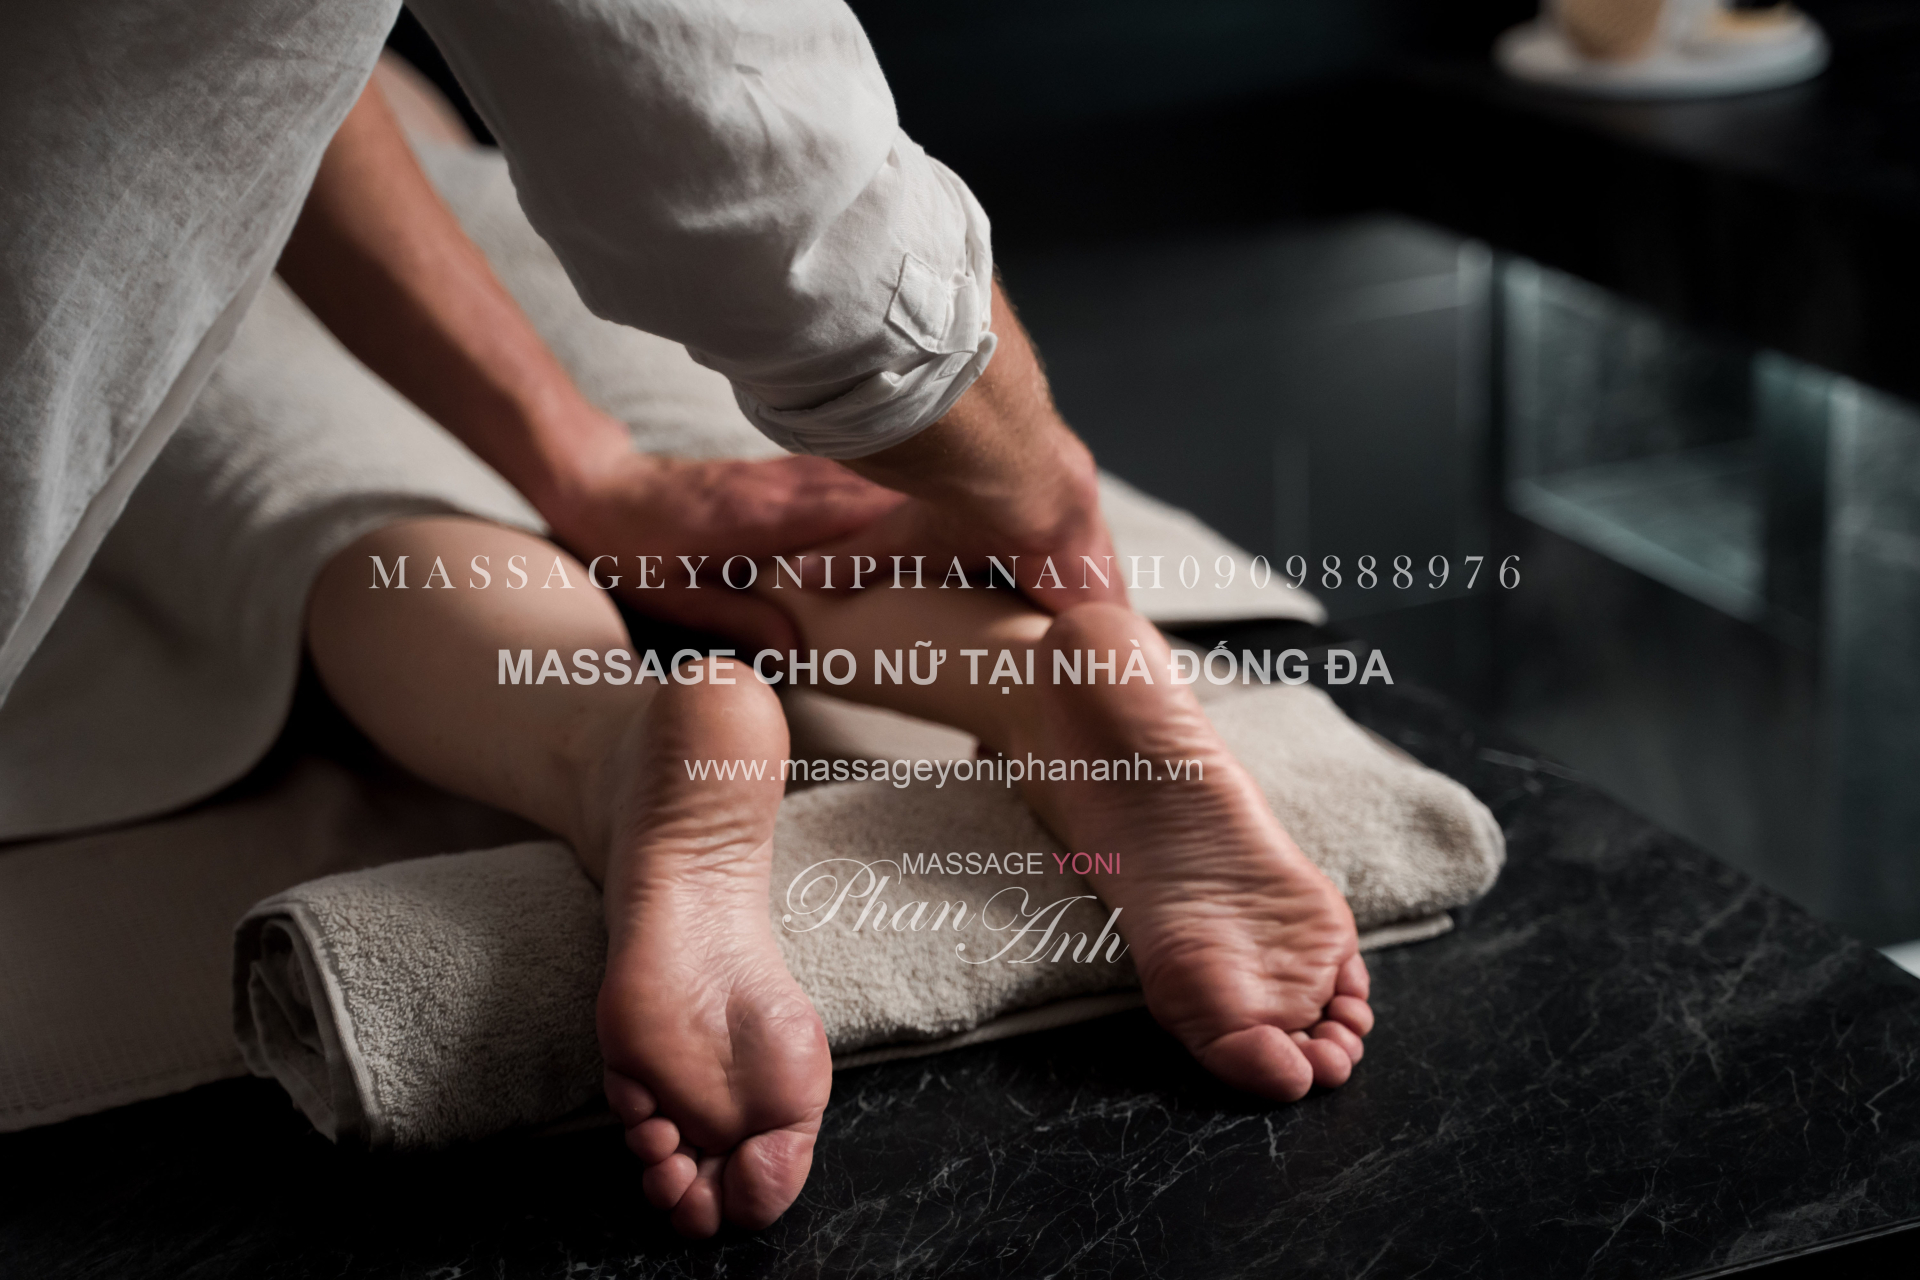 massage cho nữ tại nhà Đống Đa